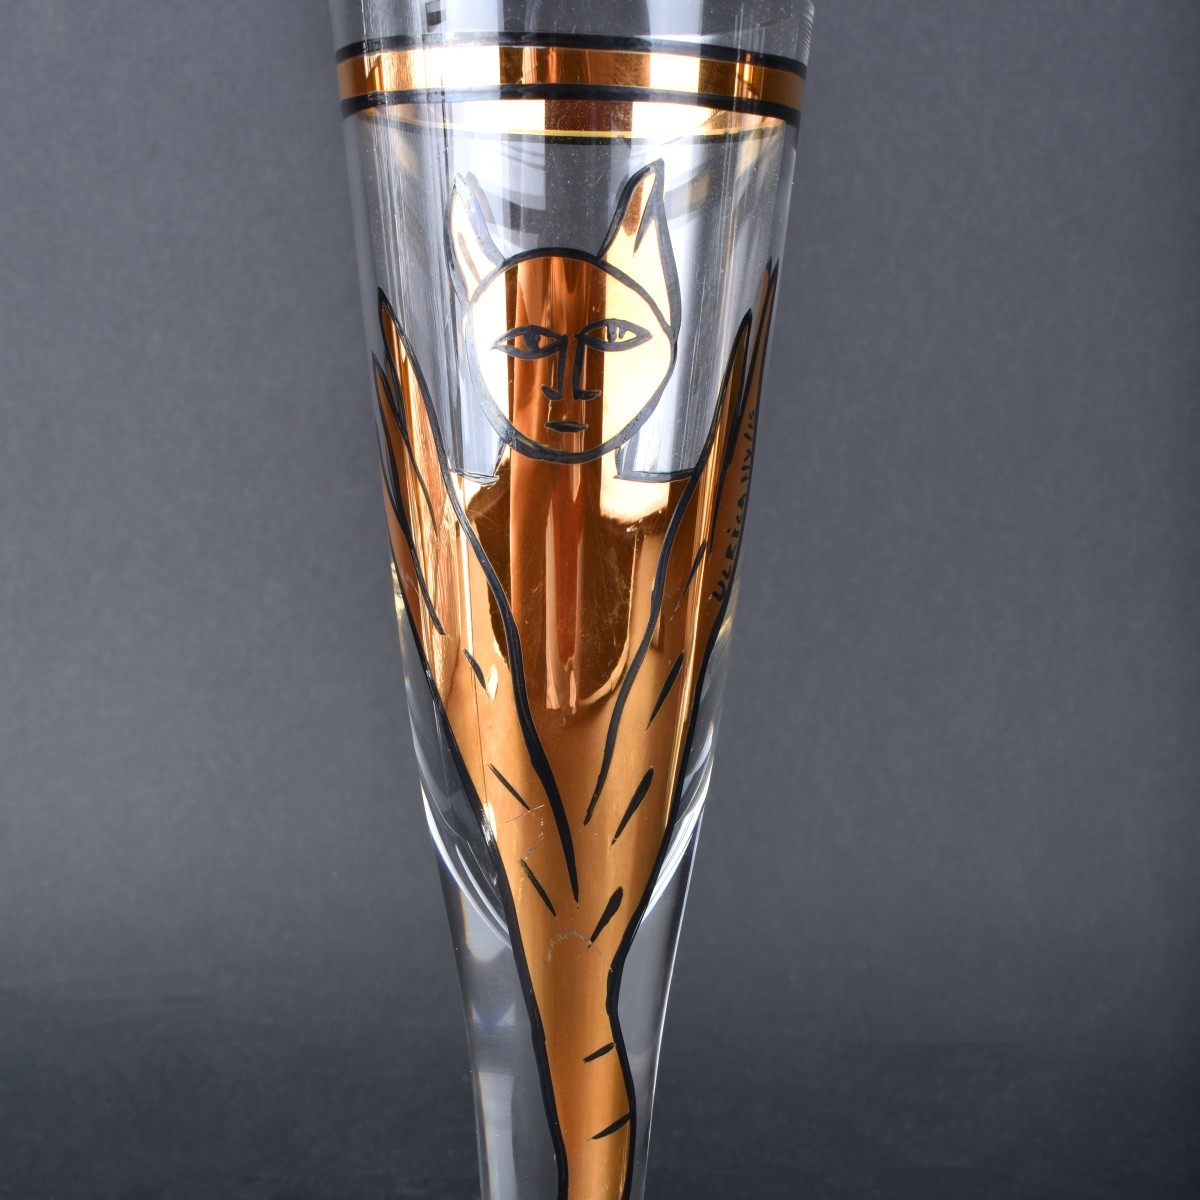 Four (4) Kosta Boda "Goldie" Art Glass Champagne